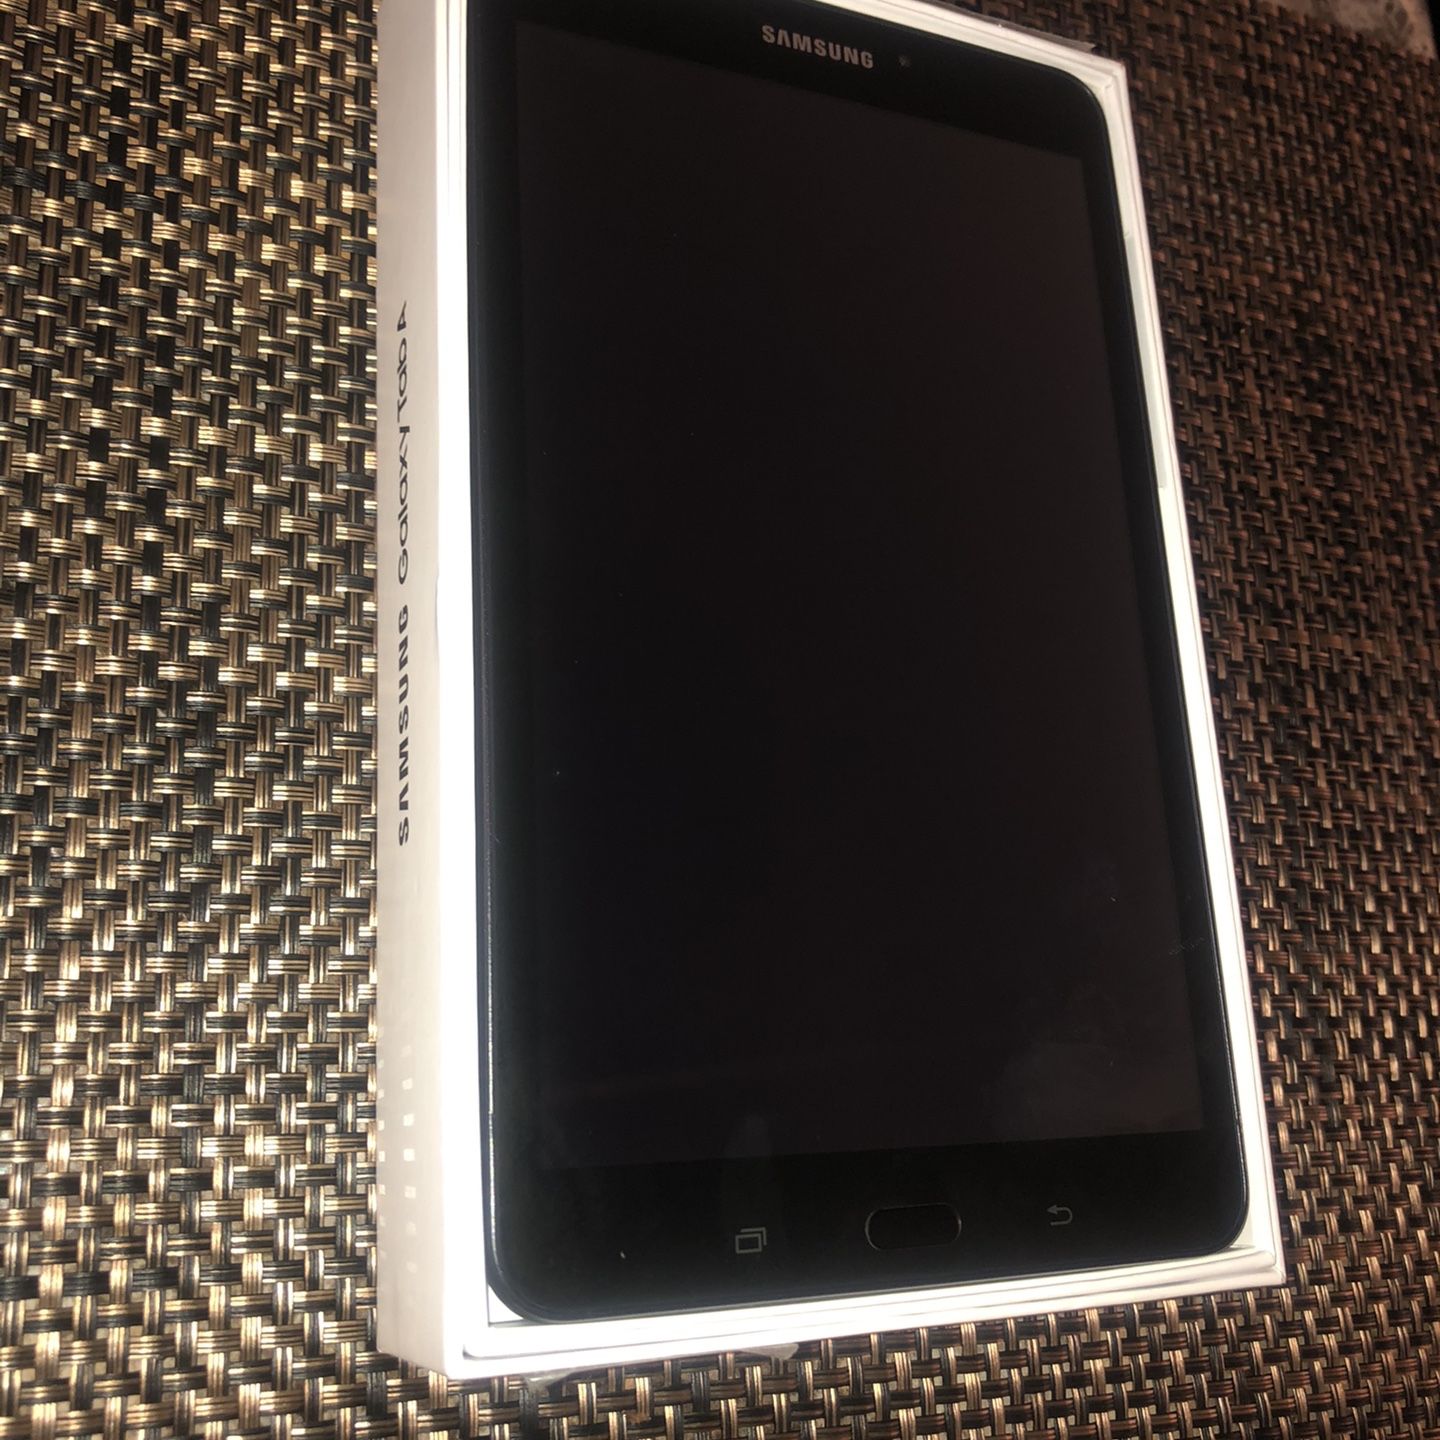 Samsung Galaxy Tab A “Black” 16GB